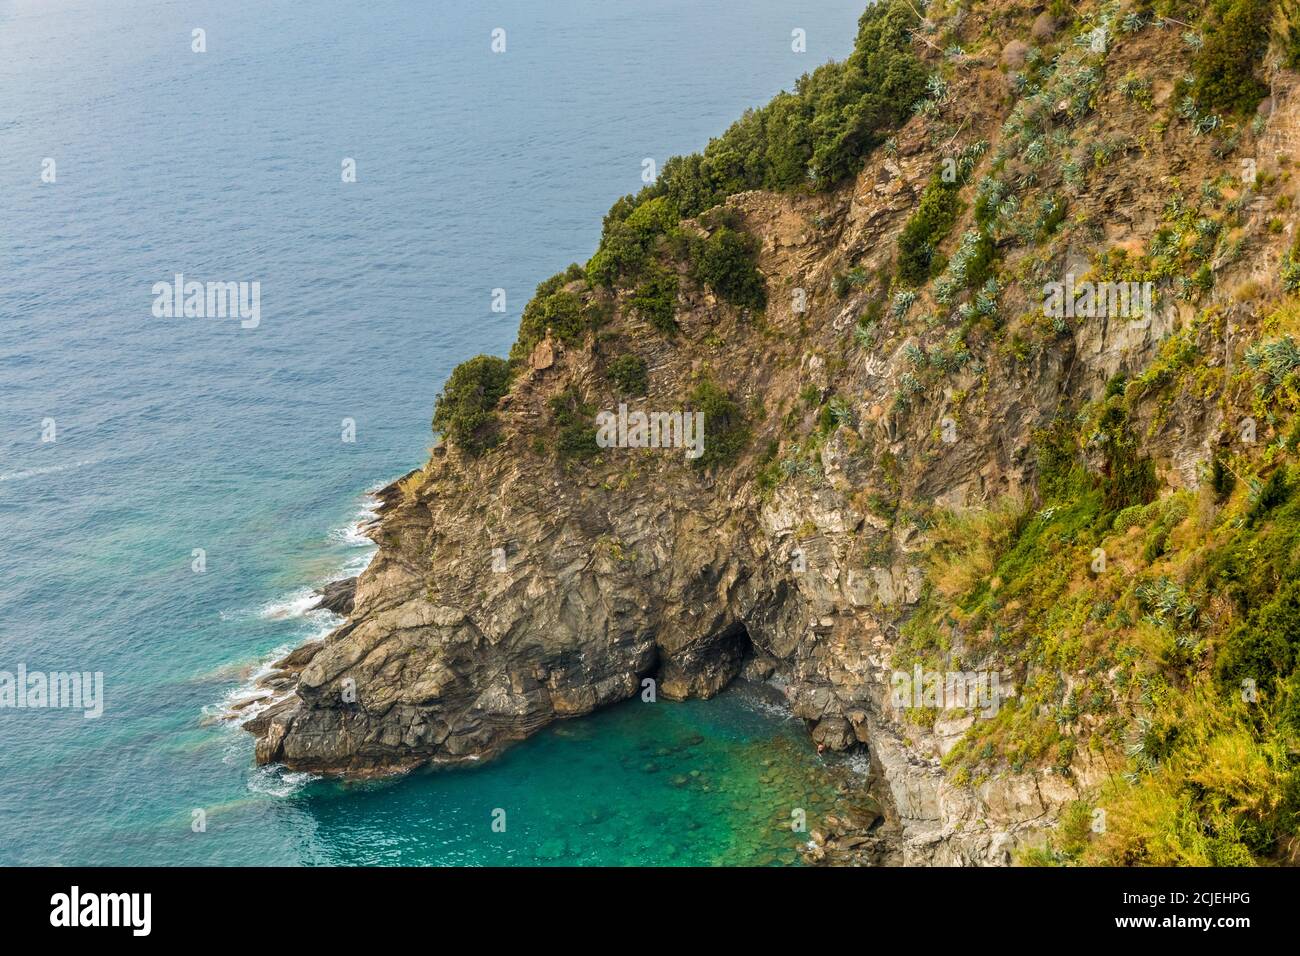 Hermosa vista panorámica del paisaje de la pequeña cala con su hermosa aguas azul turquesa poco profundas. La bahía rocosa en la zona costera de Cinque Terre... Foto de stock